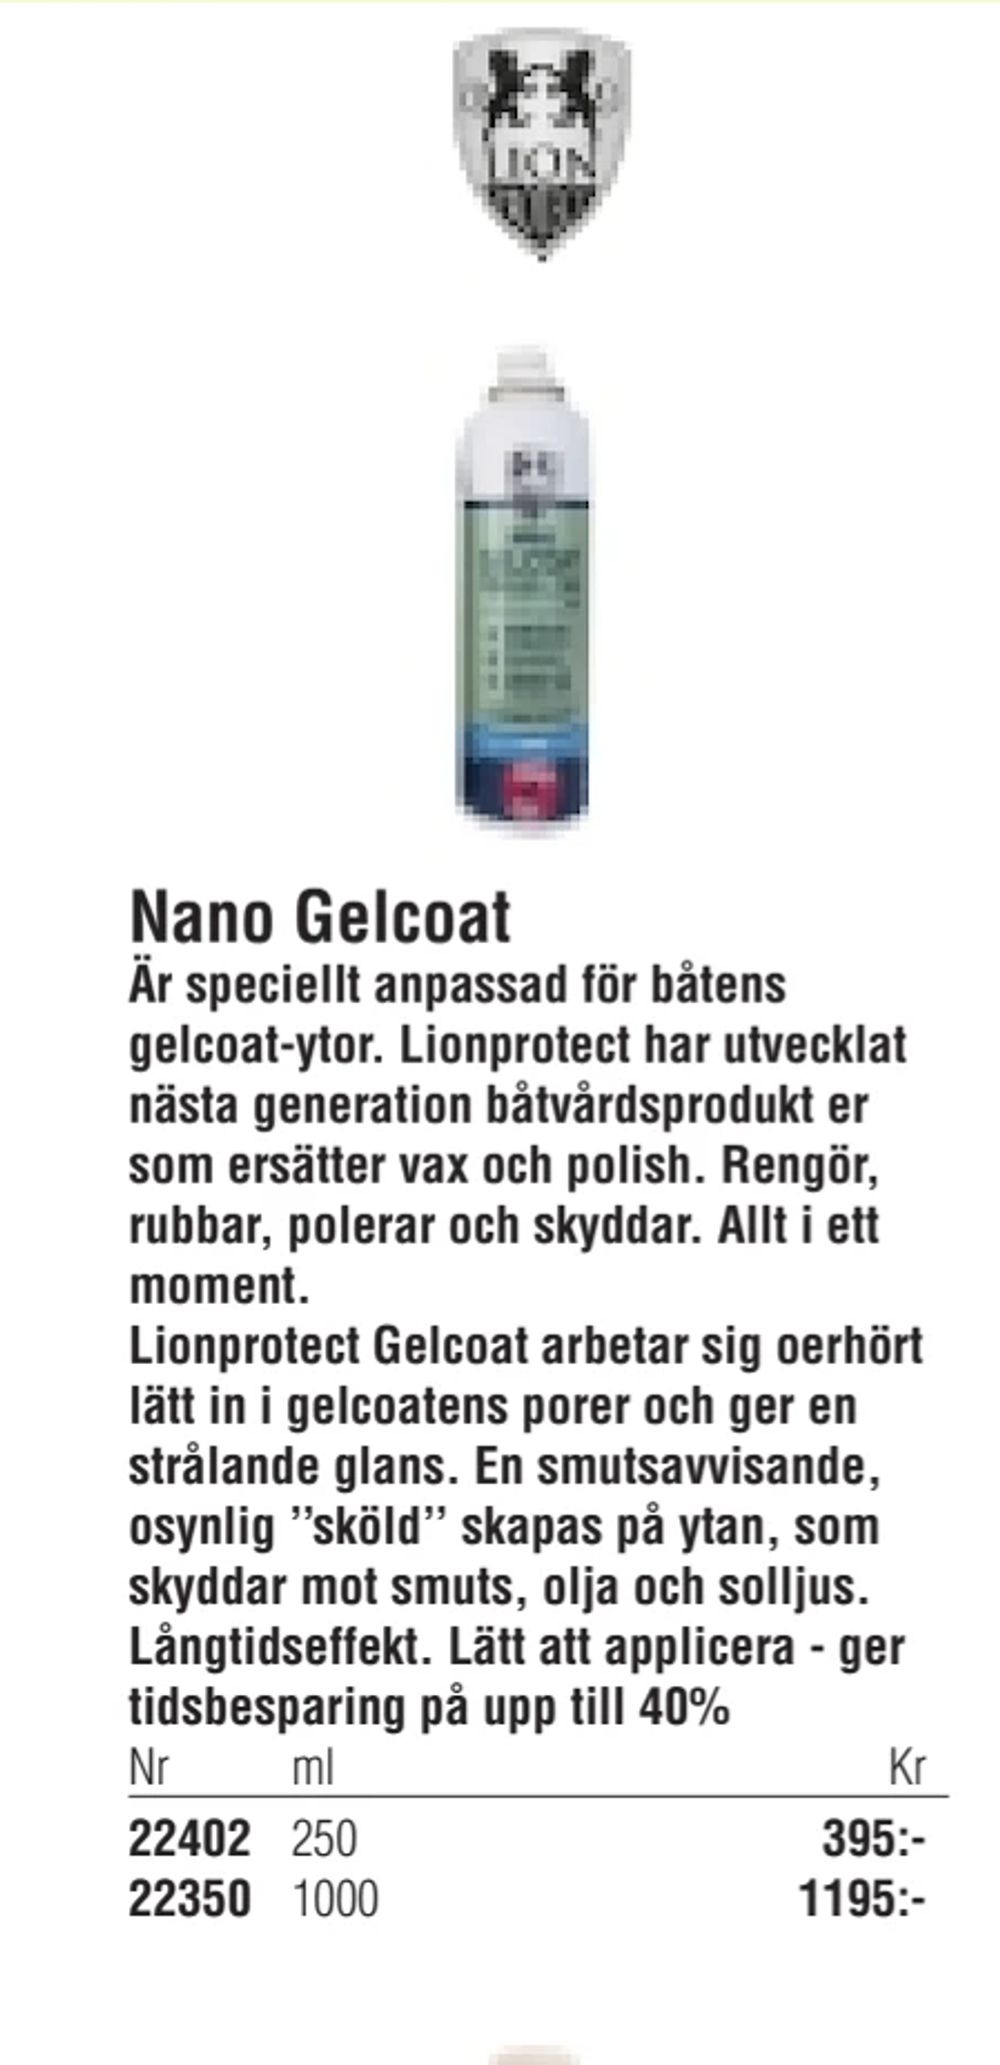 Erbjudanden på Nano Gelcoat från Erlandsons Brygga för 395 kr